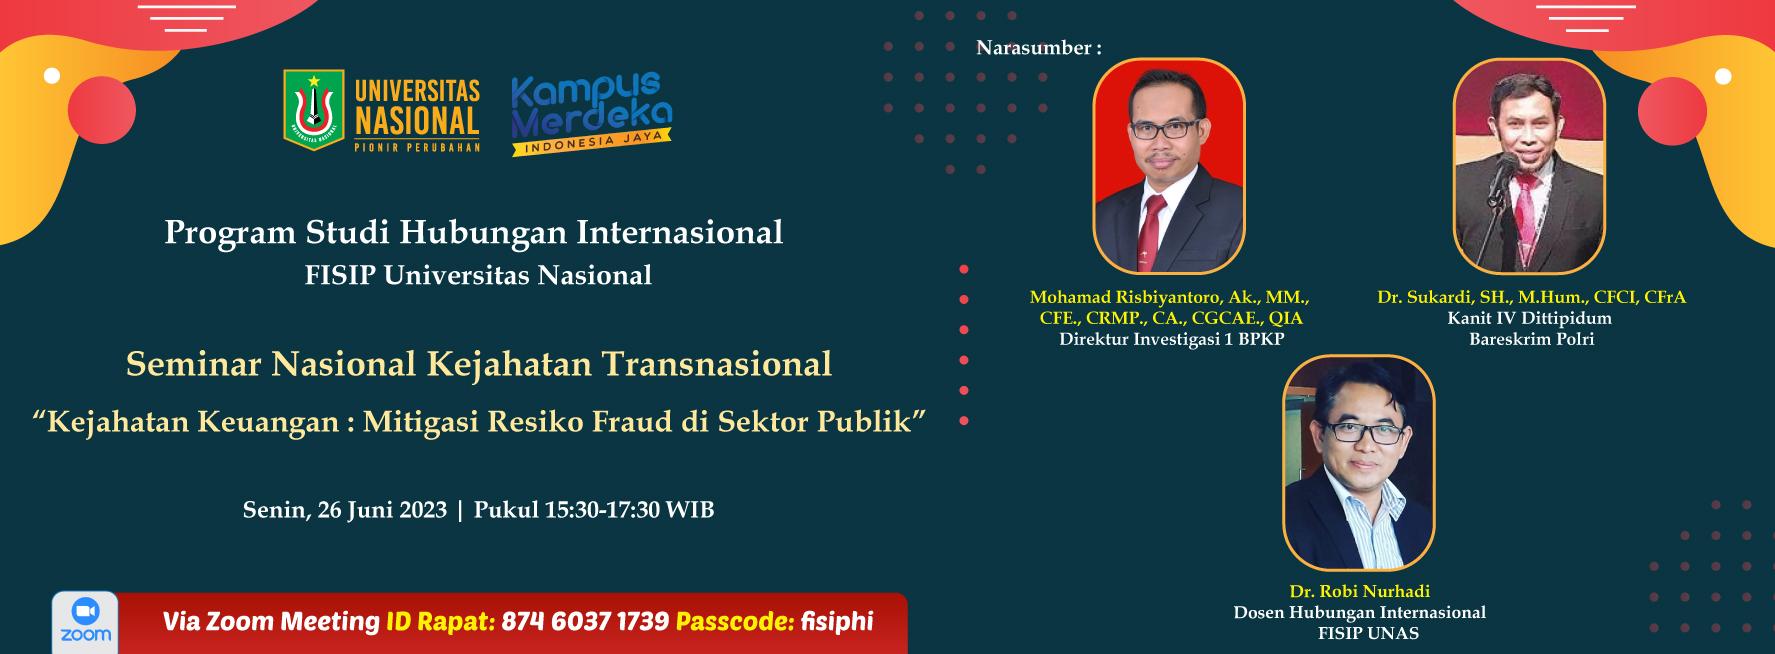 Seminar-Nasional-Kejahatan-Transnasional-'Kejahatan-Keuangan-.-Mitigasi-Resiko-Fraud-di-Sektor-Publik'